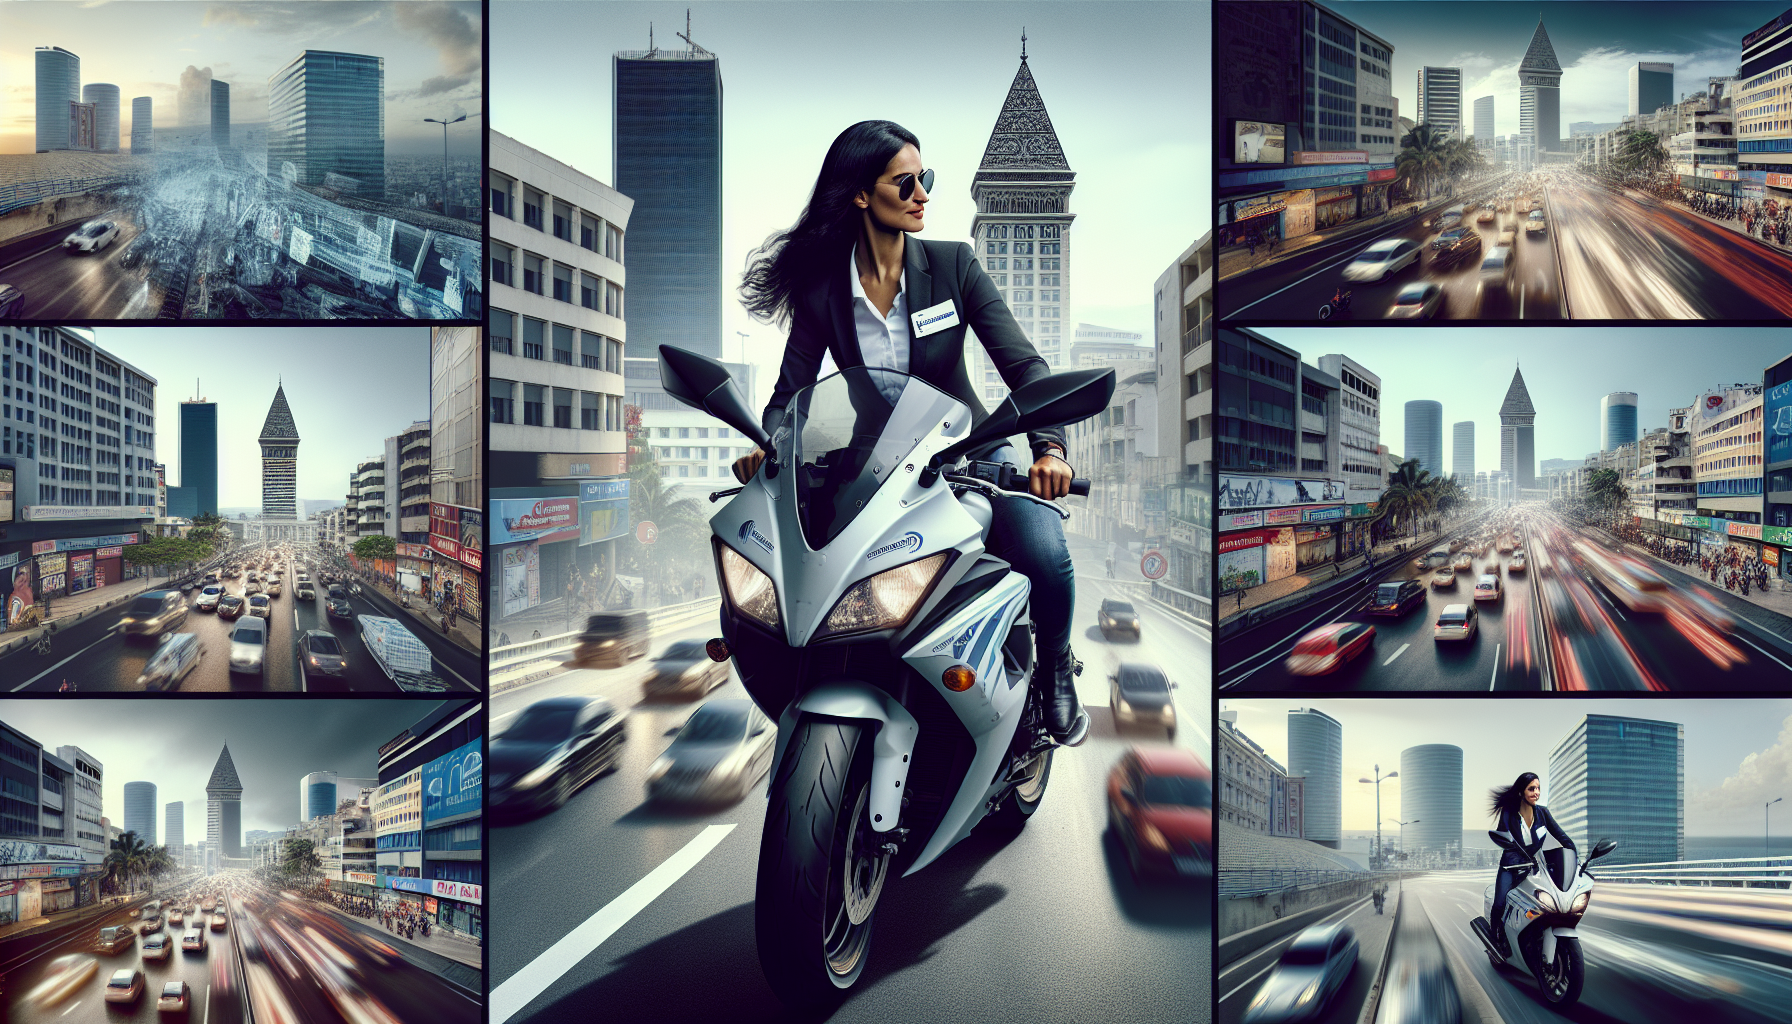 découvrez comment appréhender la circulation urbaine à la réunion en toute sérénité grâce à une assurance moto adaptée.